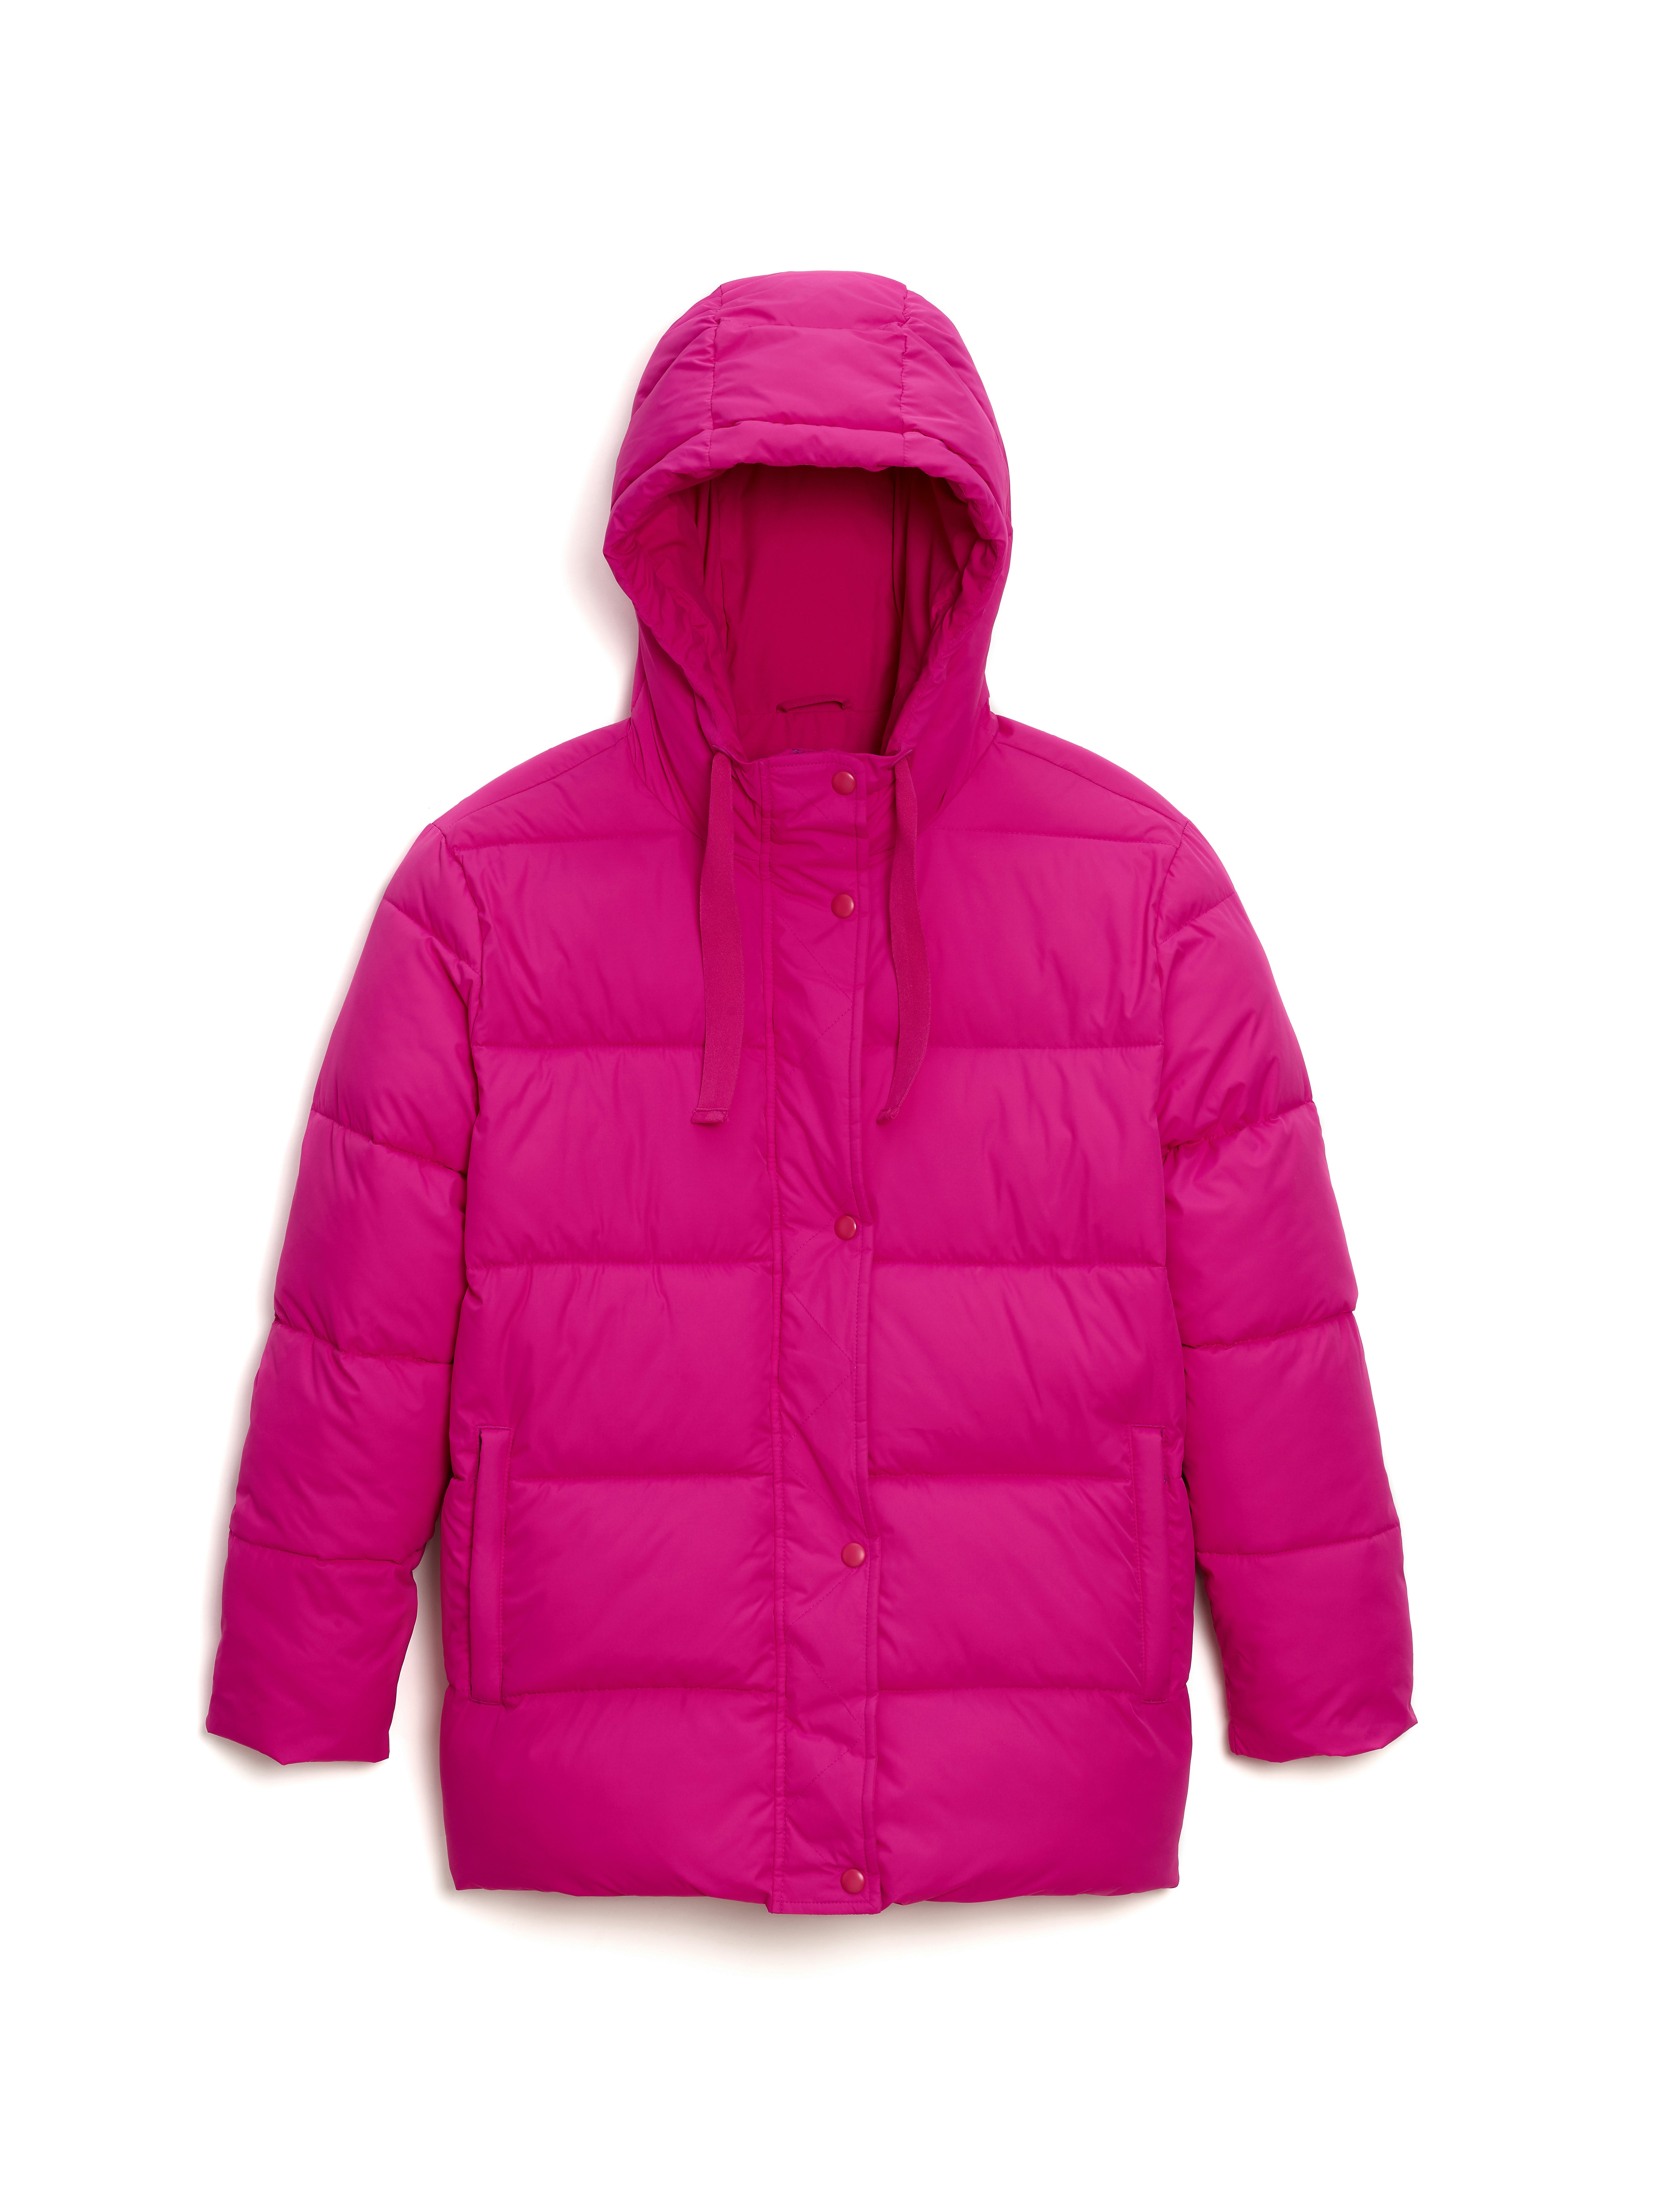 gap pink coat